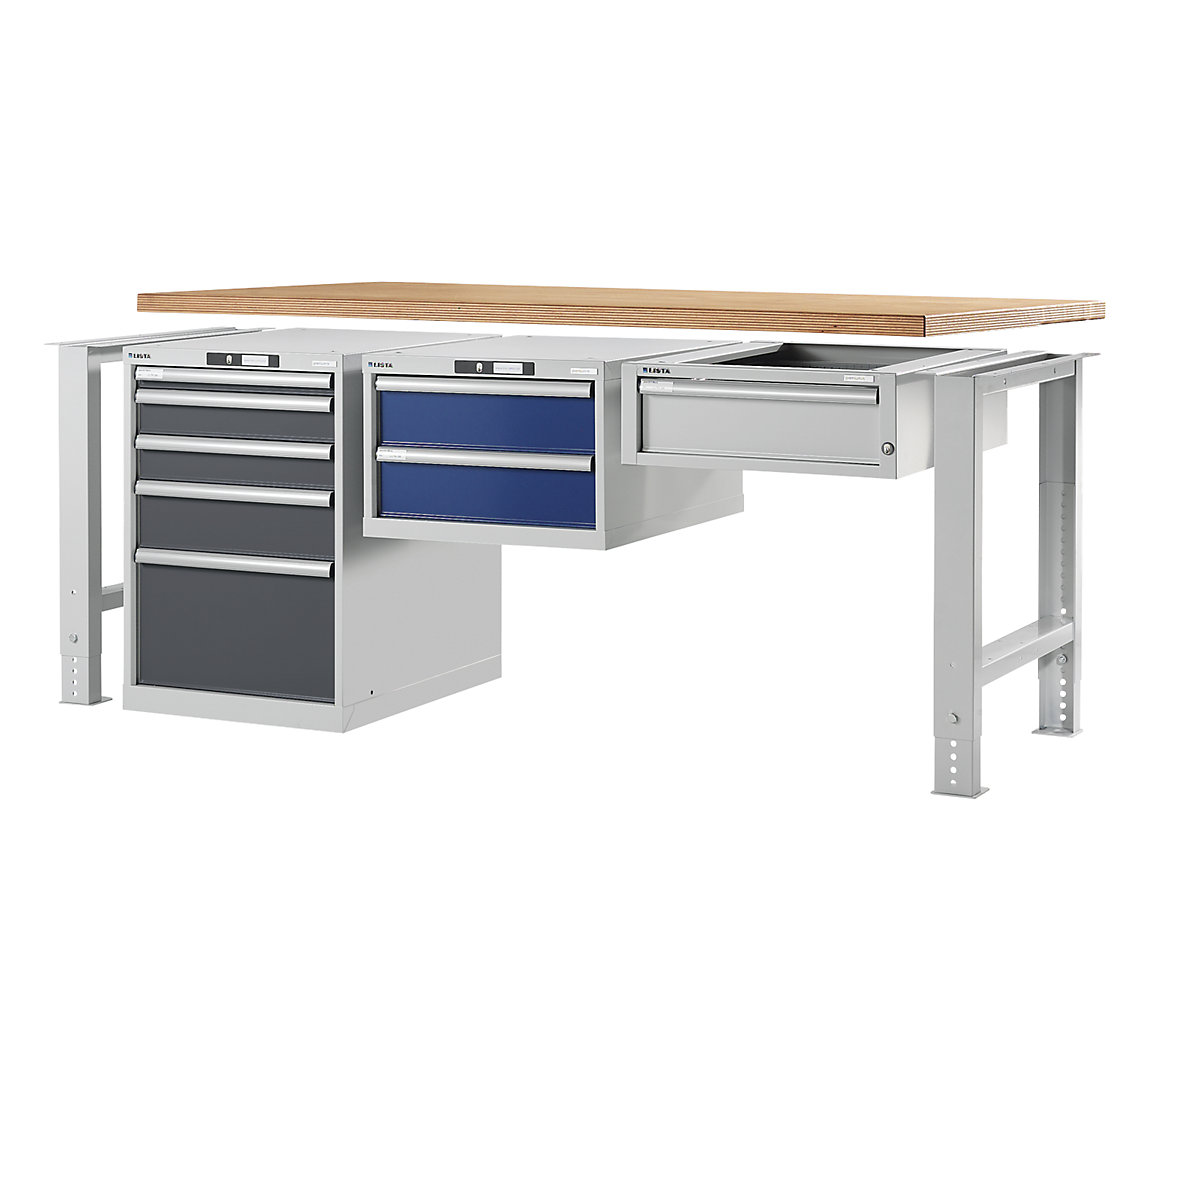 Stół warsztatowy w systemie modułowym, szafka dolna – LISTA (Zdjęcie produktu 2)-1